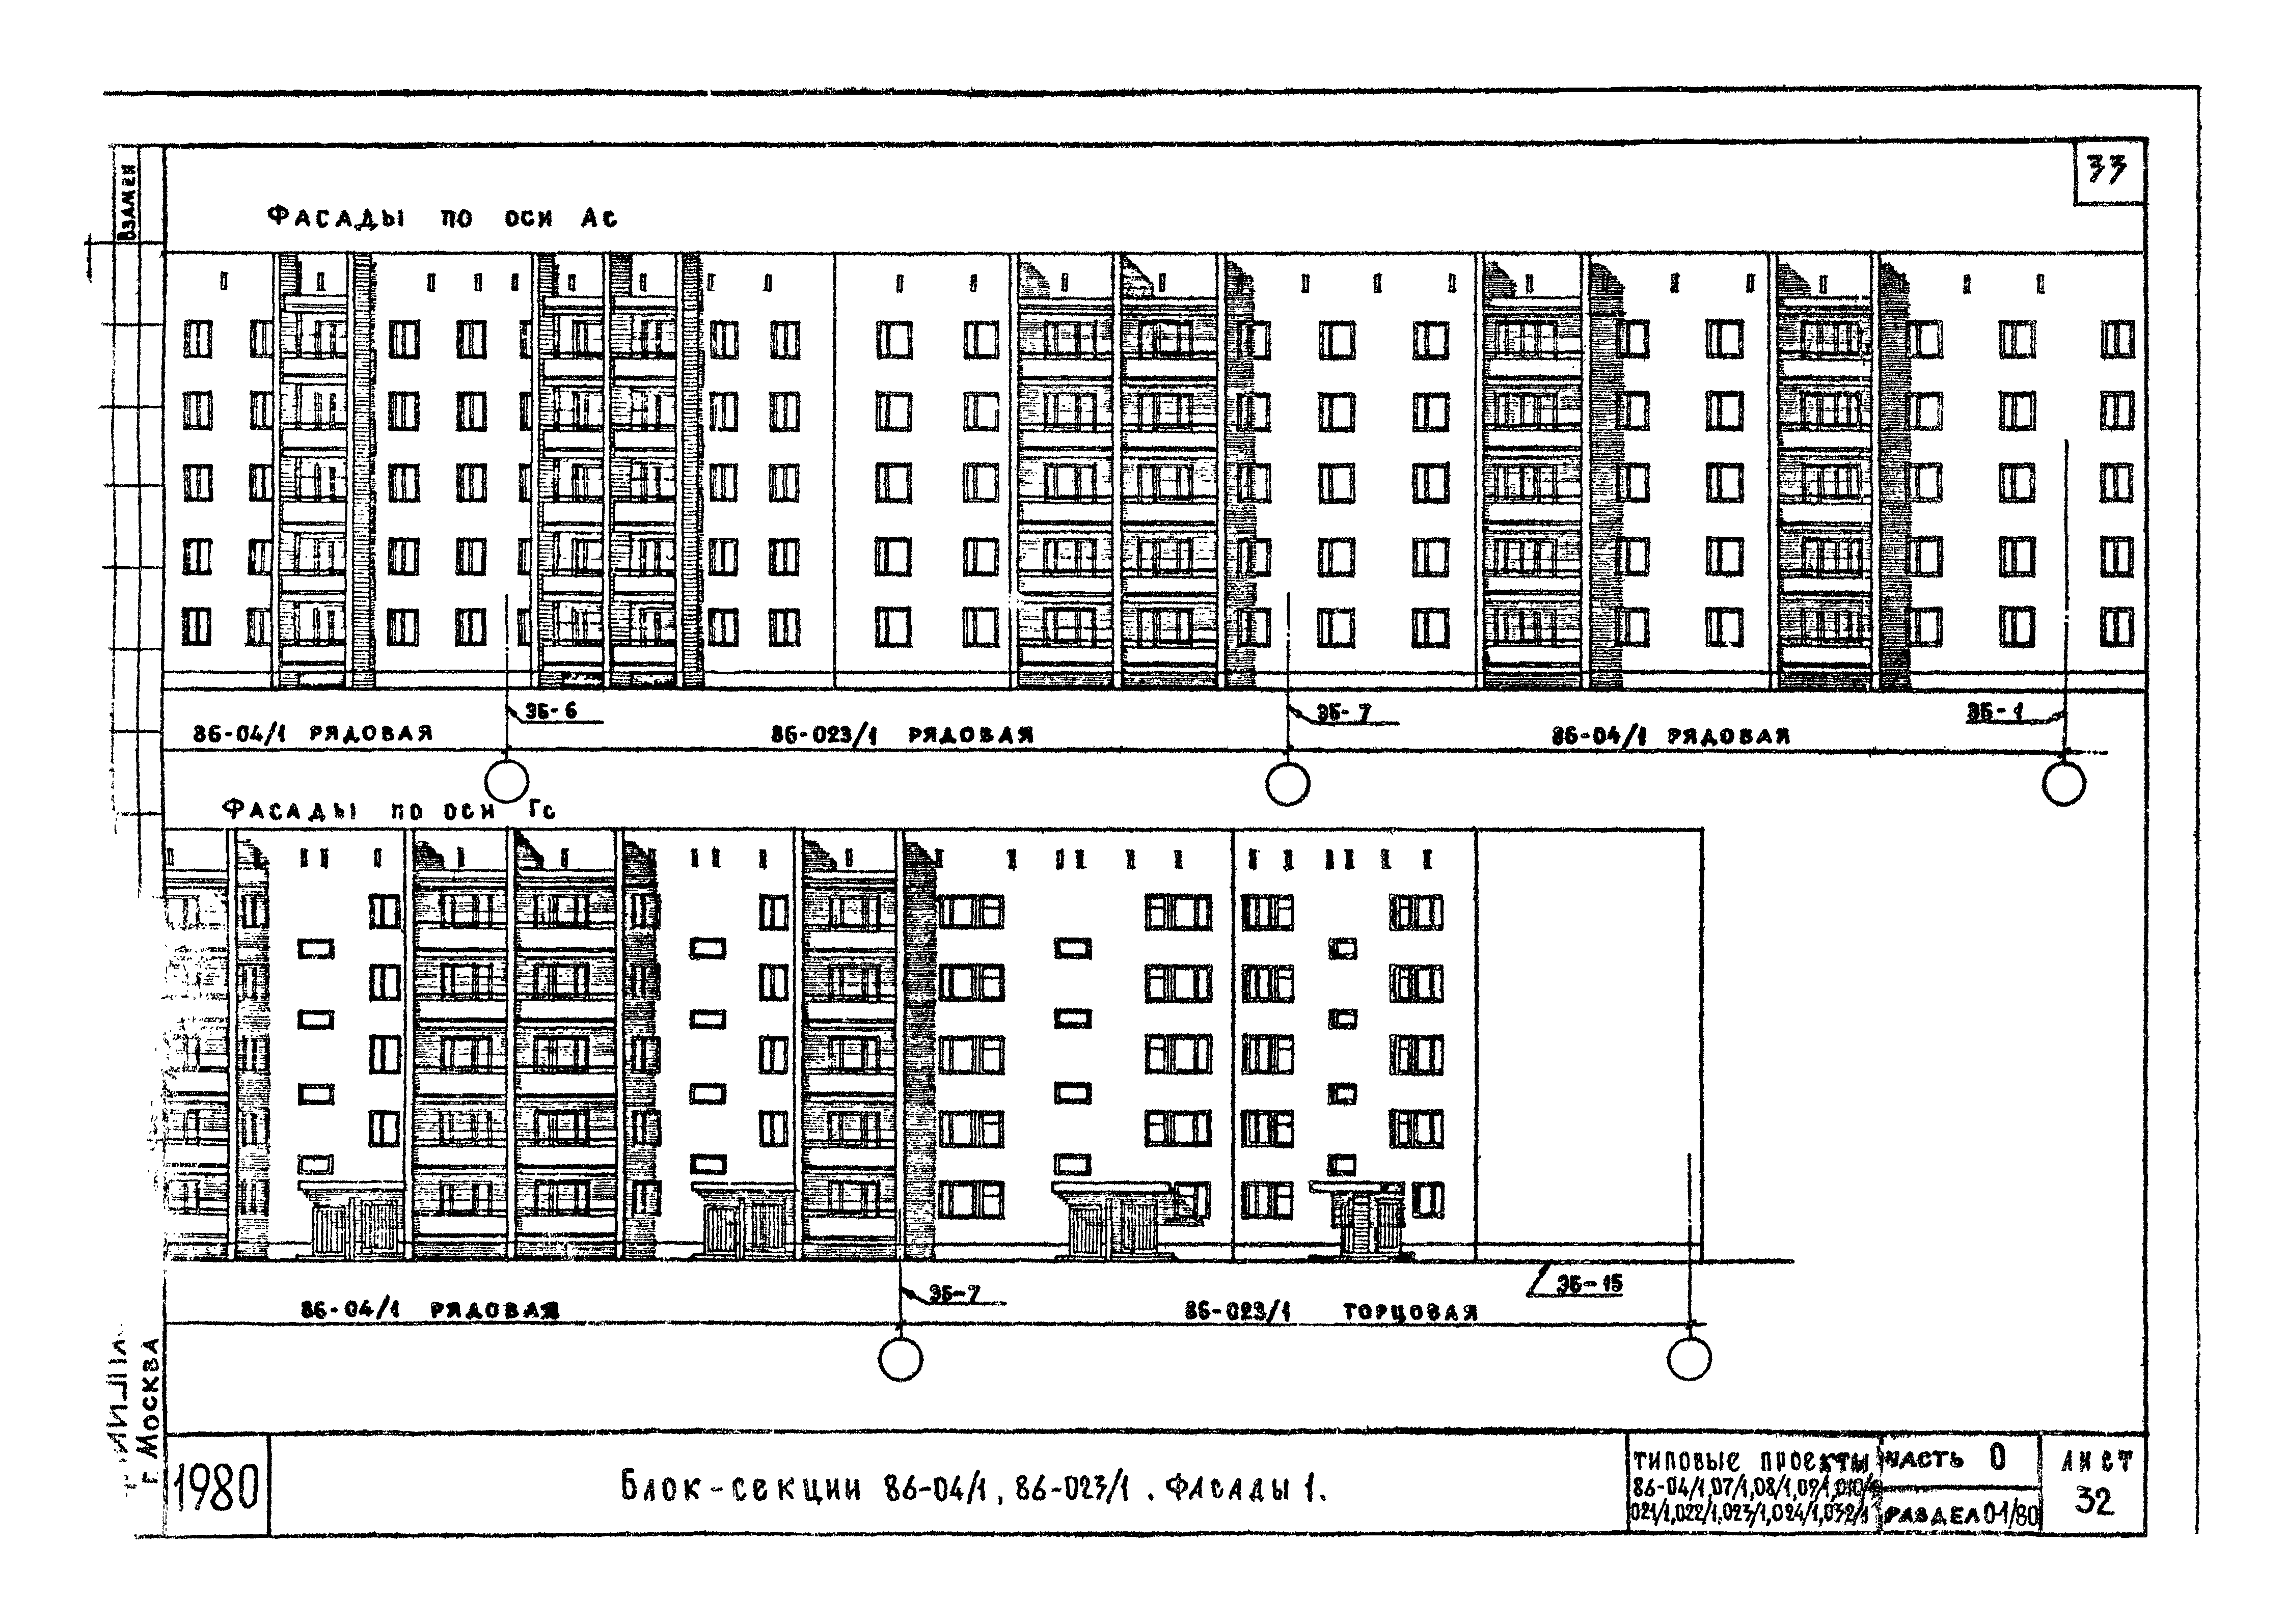 Типовой проект 86-022/1